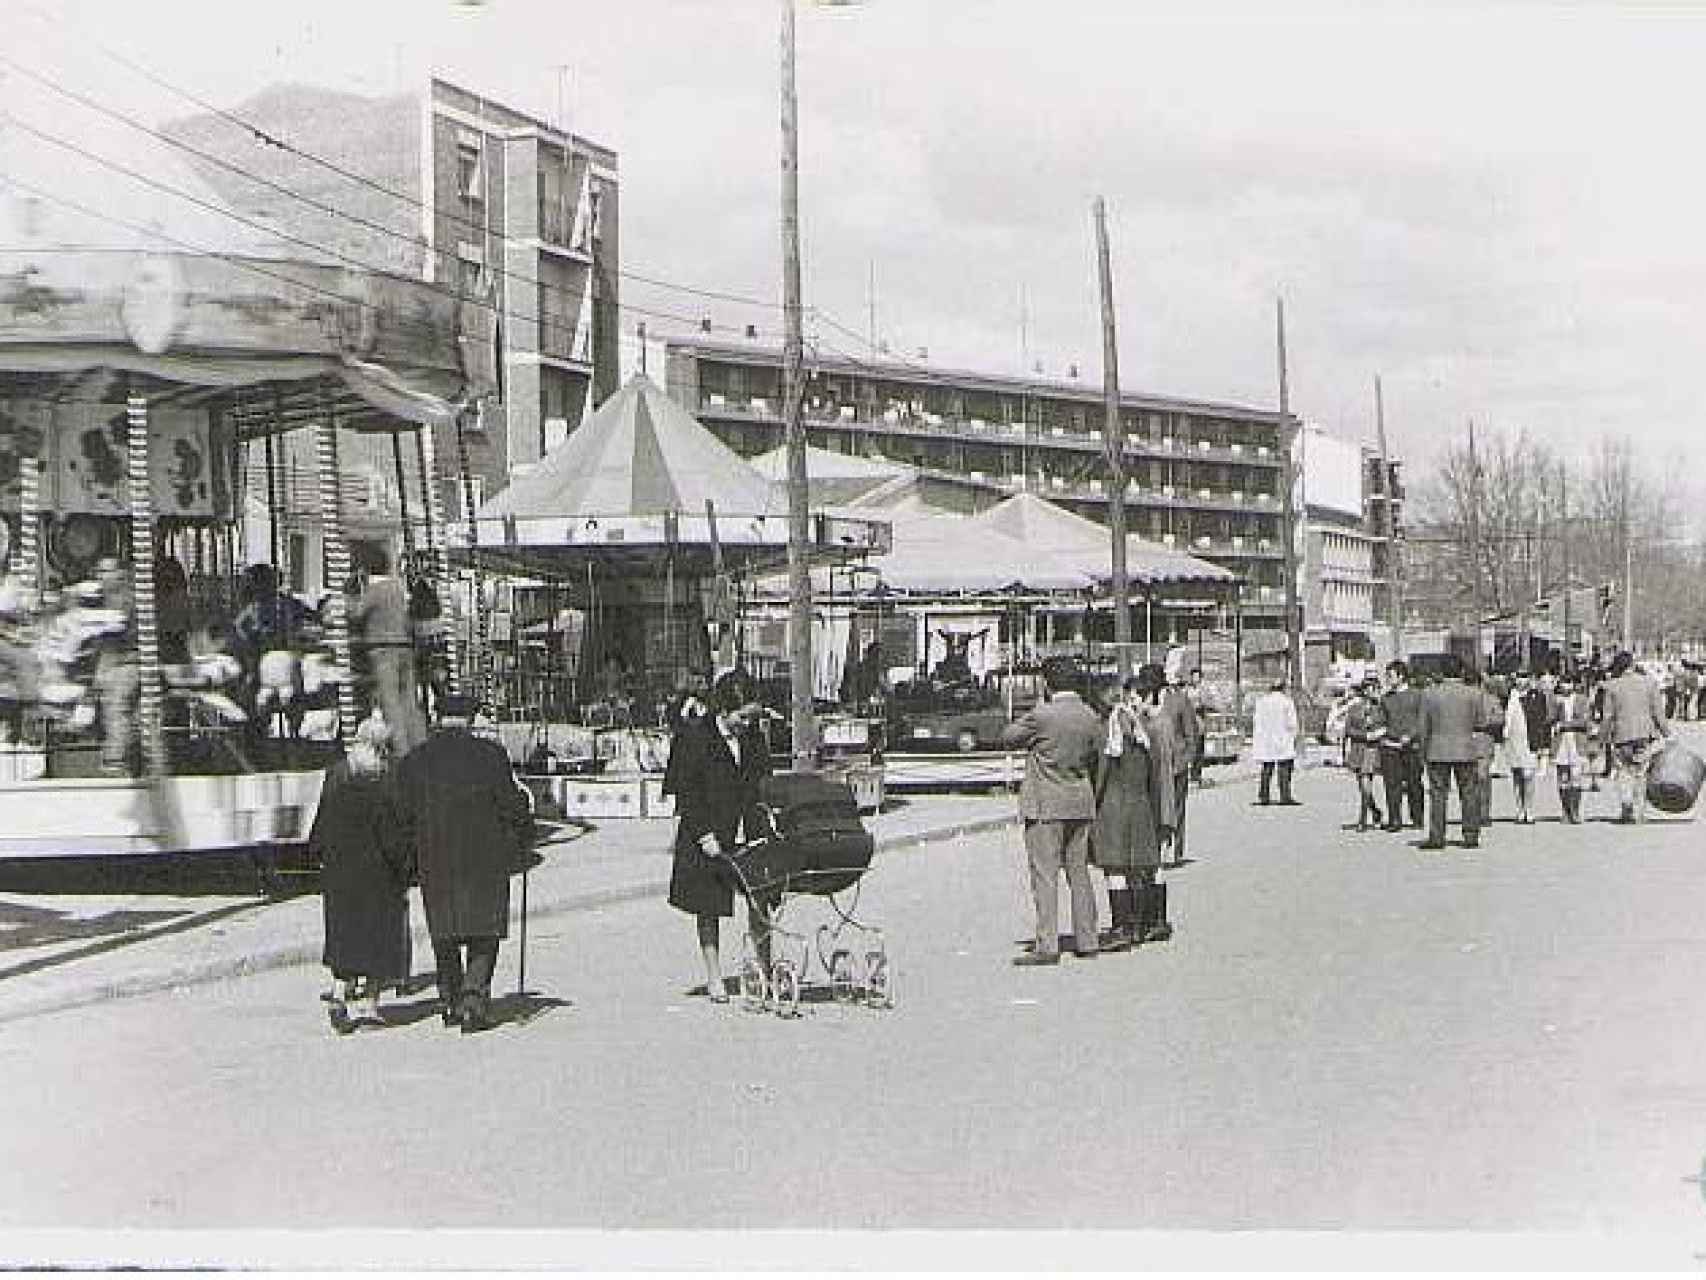 Imagen del Real de la Feria ubicado en La Rubia en la década de los 70.